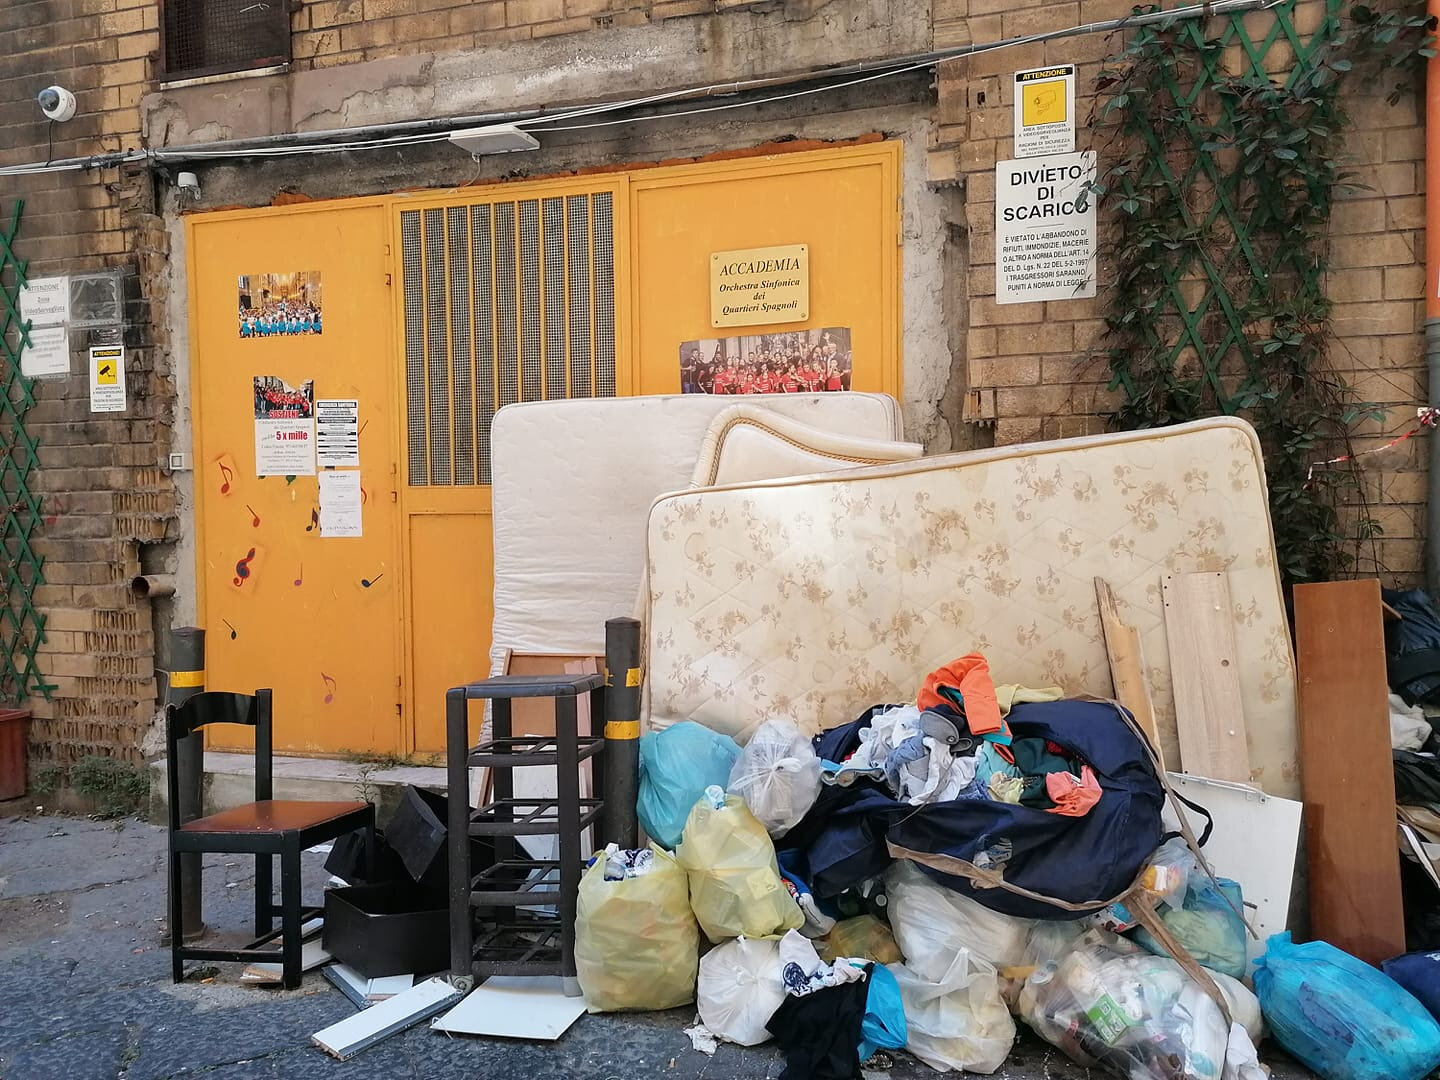 Peggiora la situazione rifiuti ai Quartieri Spagnoli. Invaso dalla spazzatura l’ingresso dell’Accademia dell’orchestra sinfonica.